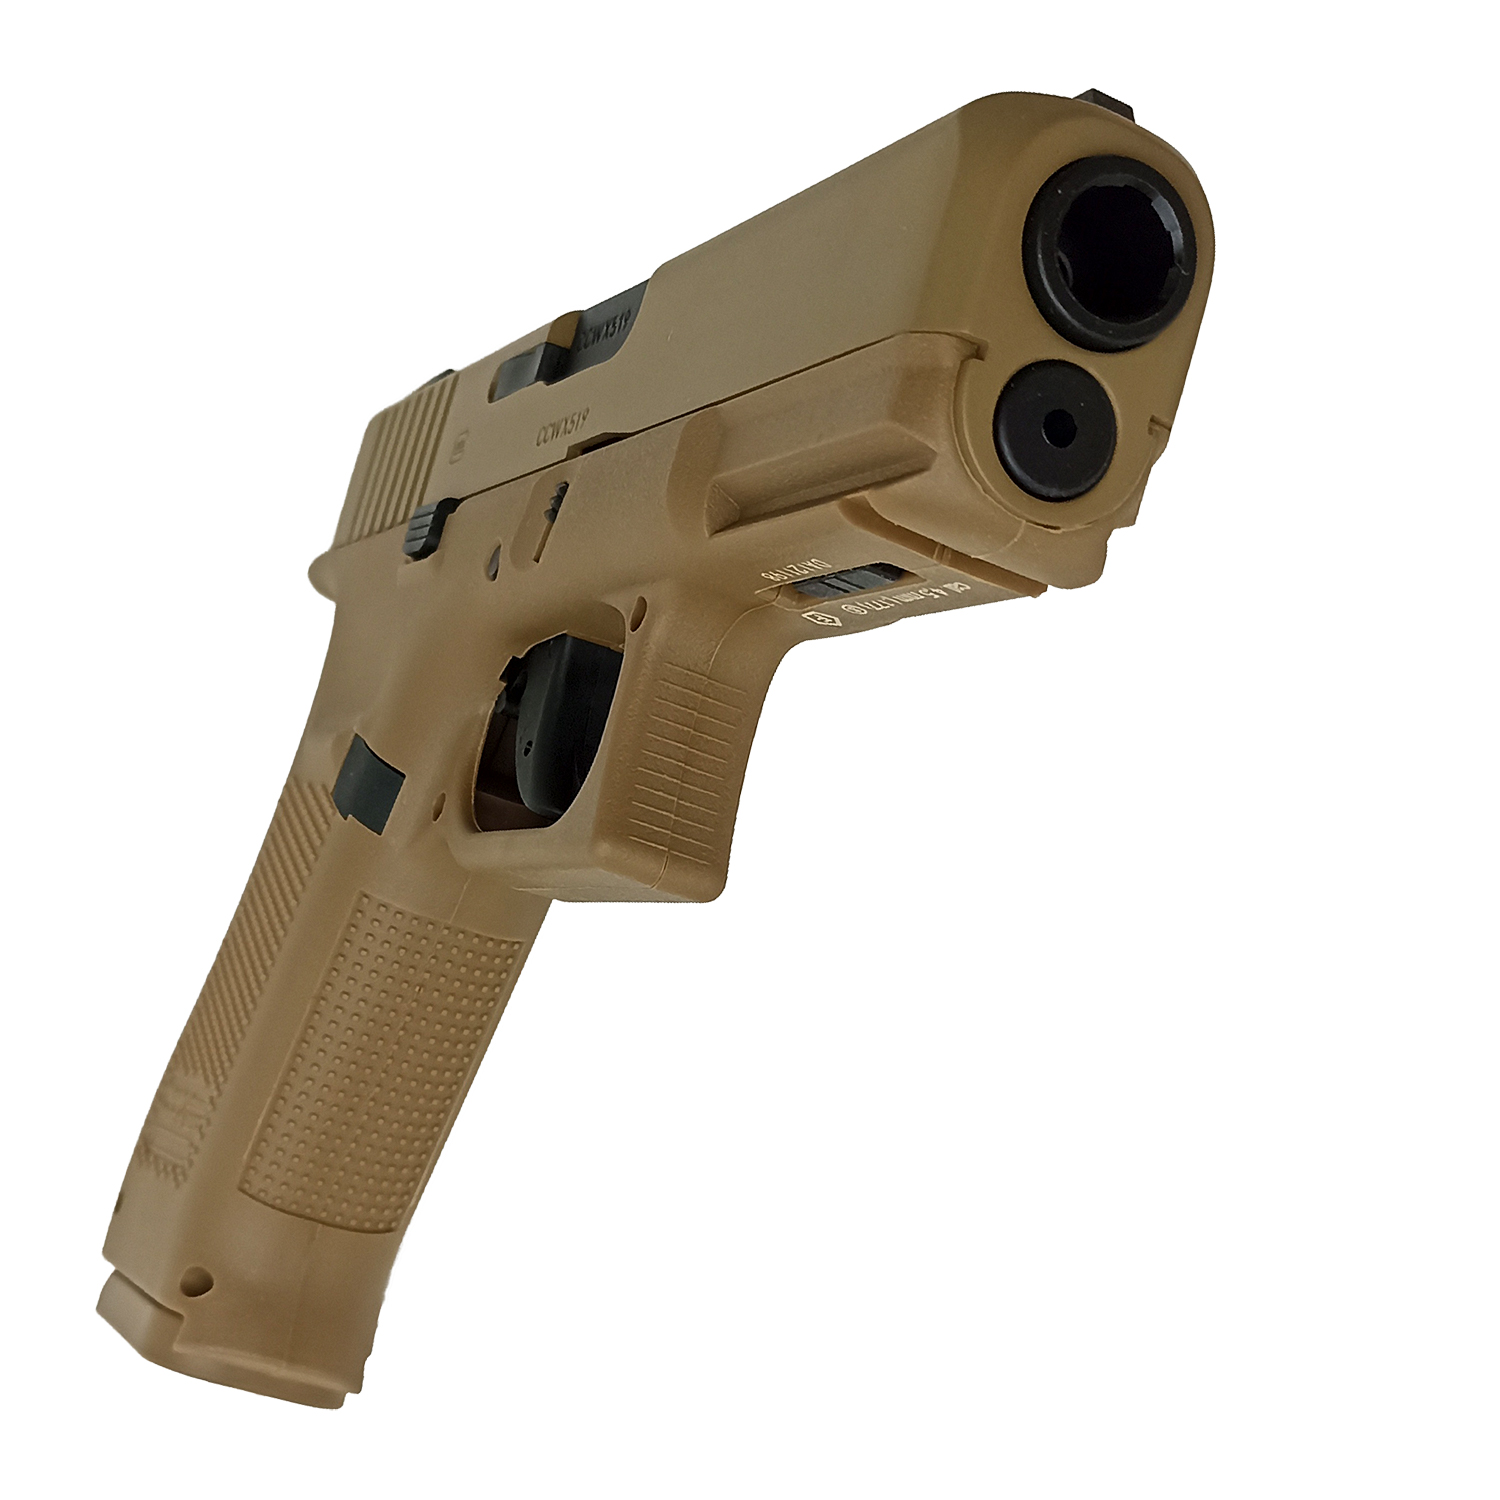 Пистолет пневматический Umarex Glock 19X (TAN, No BlowBack)